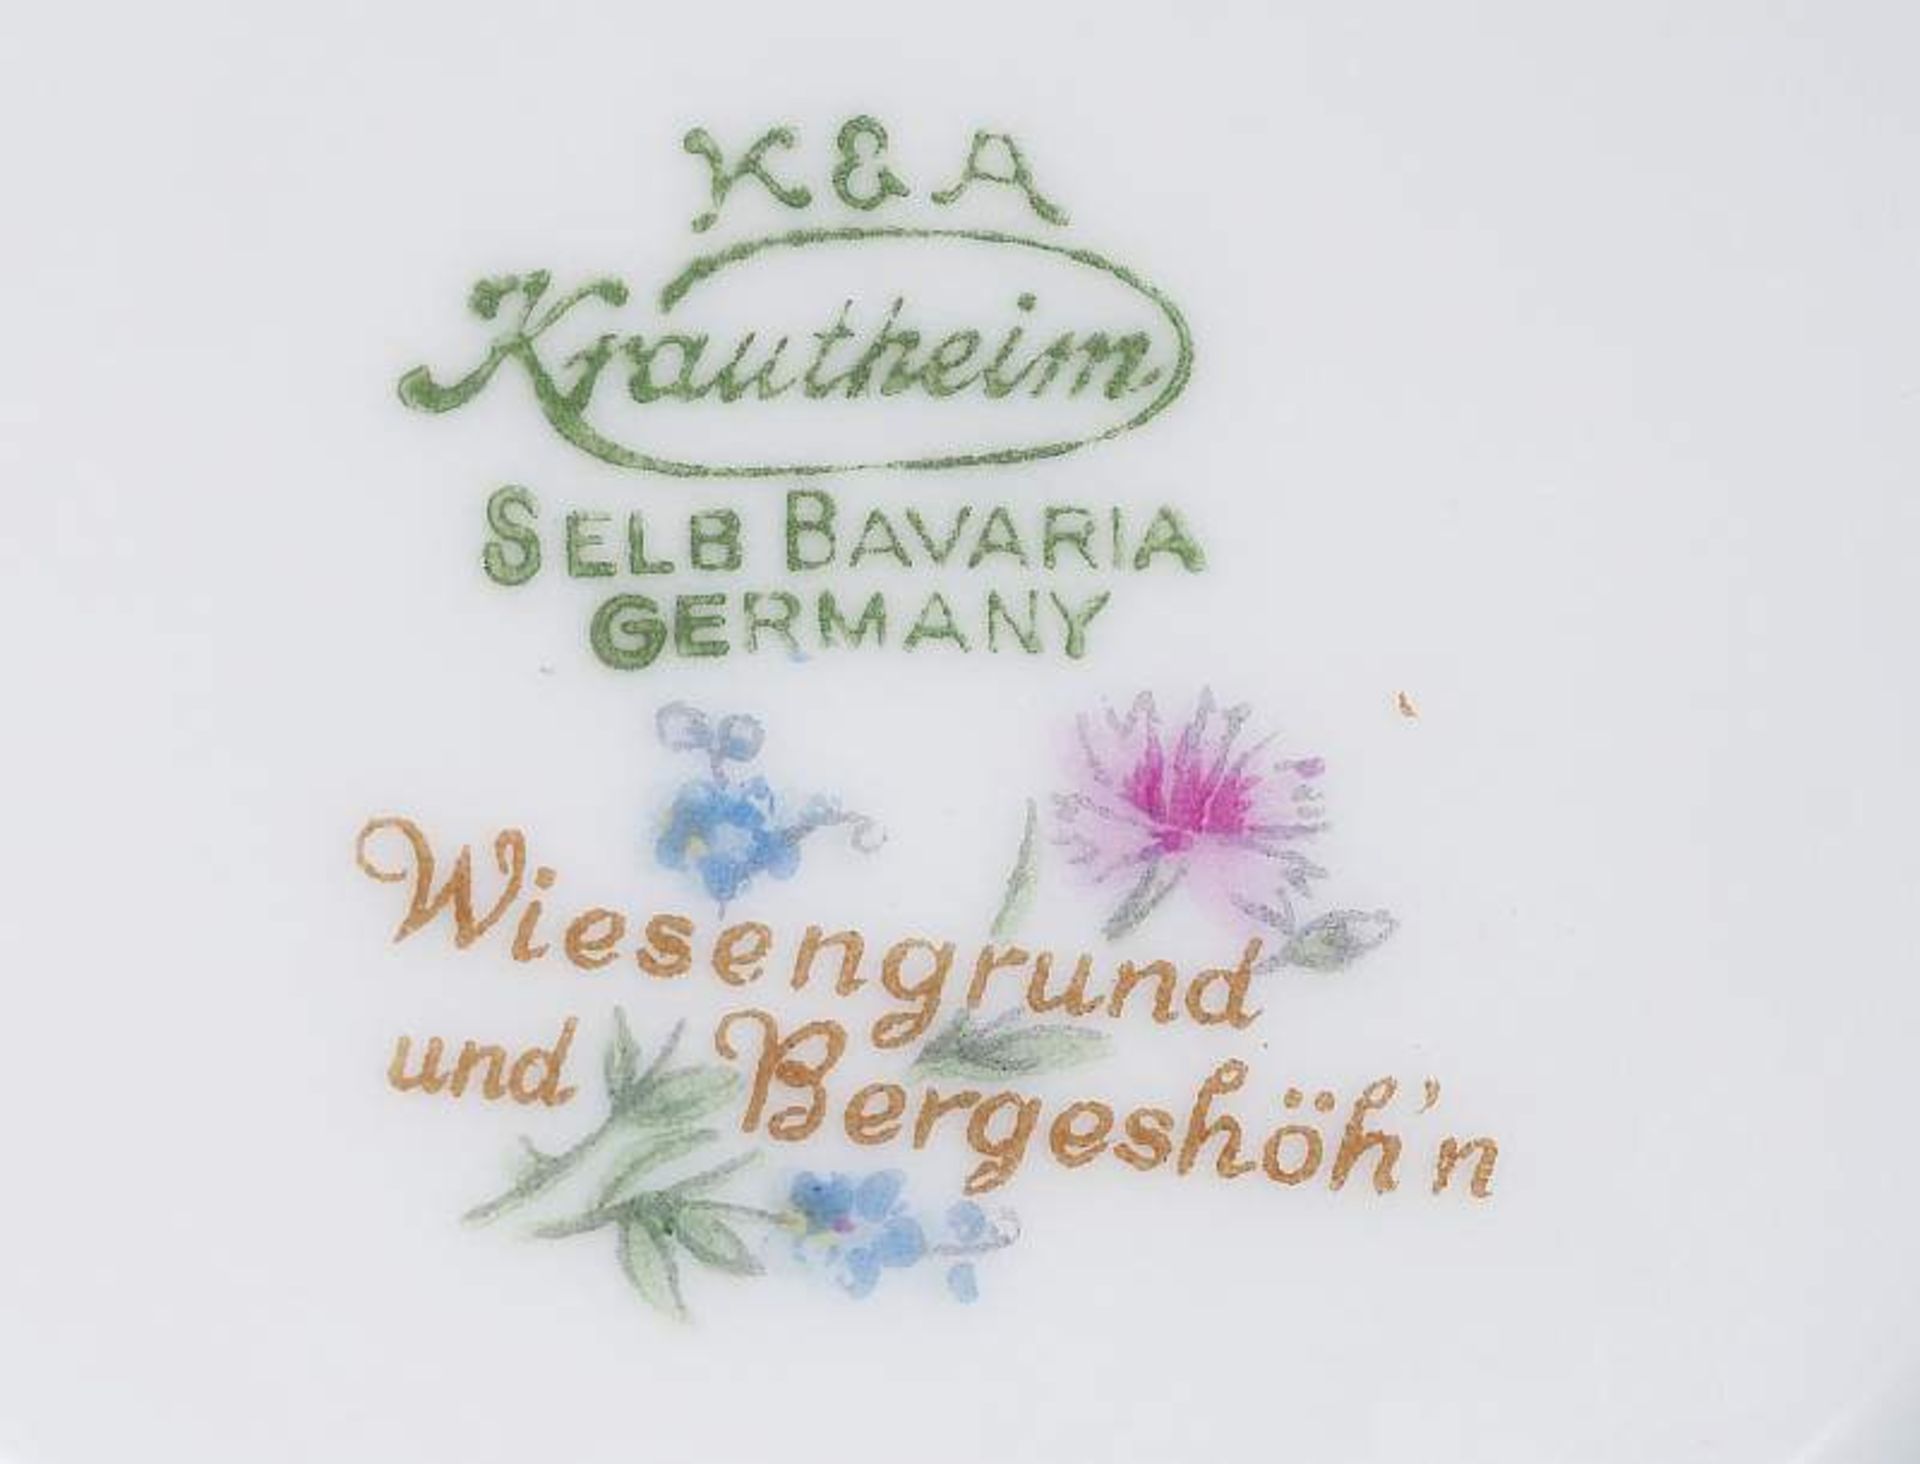 Paar Tischlampen. KRAUTHEIM Selb Bavaria, Dekor "Wiesengrund und Bergeshöh'nPaar Tischlampen. - Image 5 of 5